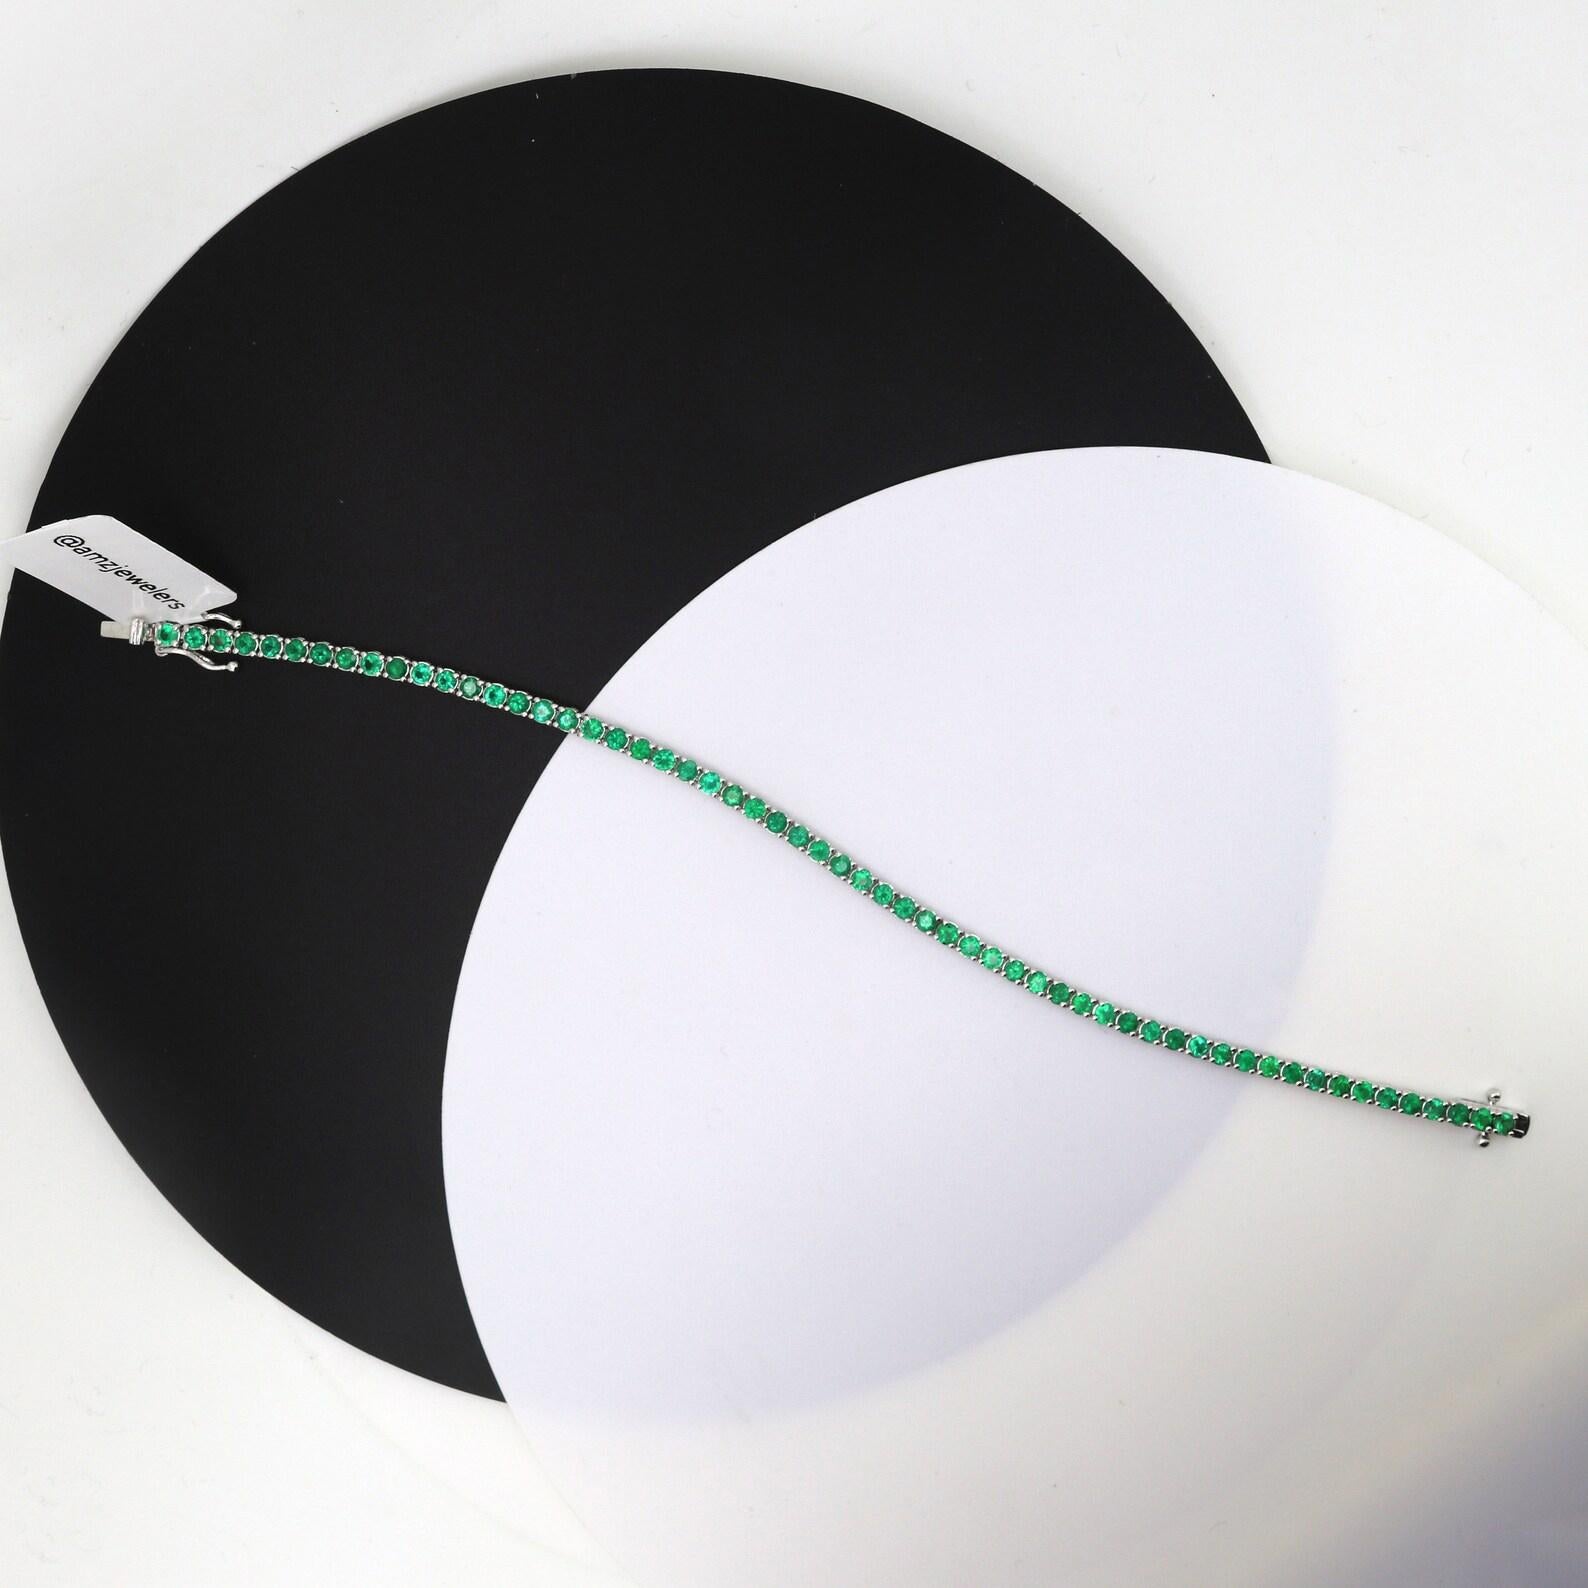 Élevez votre élégance avec notre exquis bracelet de tennis en émeraude naturelle, méticuleusement confectionné dans un luxueux or 18k. Chaque pierre précieuse émeraude est sélectionnée à la main pour sa teinte verte vibrante et sa clarté